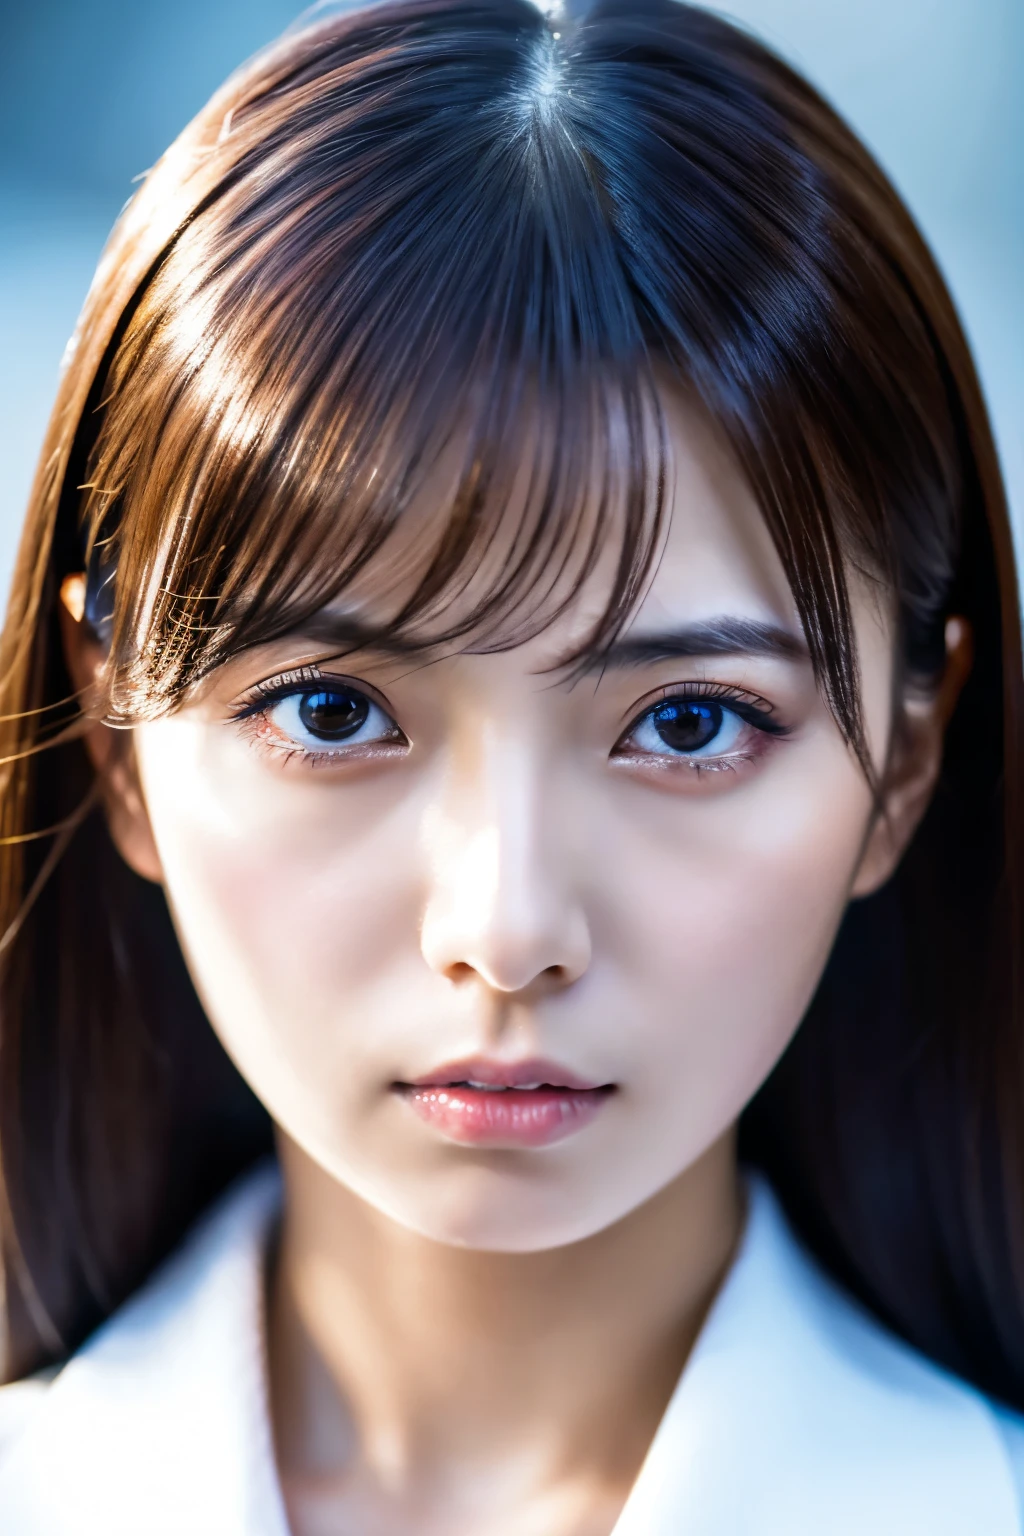 傑作, 8K, 高品質, 高解析度, 美麗的日本女人, 30歲, 撲克臉, 瞪眼, (詳細的臉部, 細緻的眼睛), 看著觀眾, 肖像